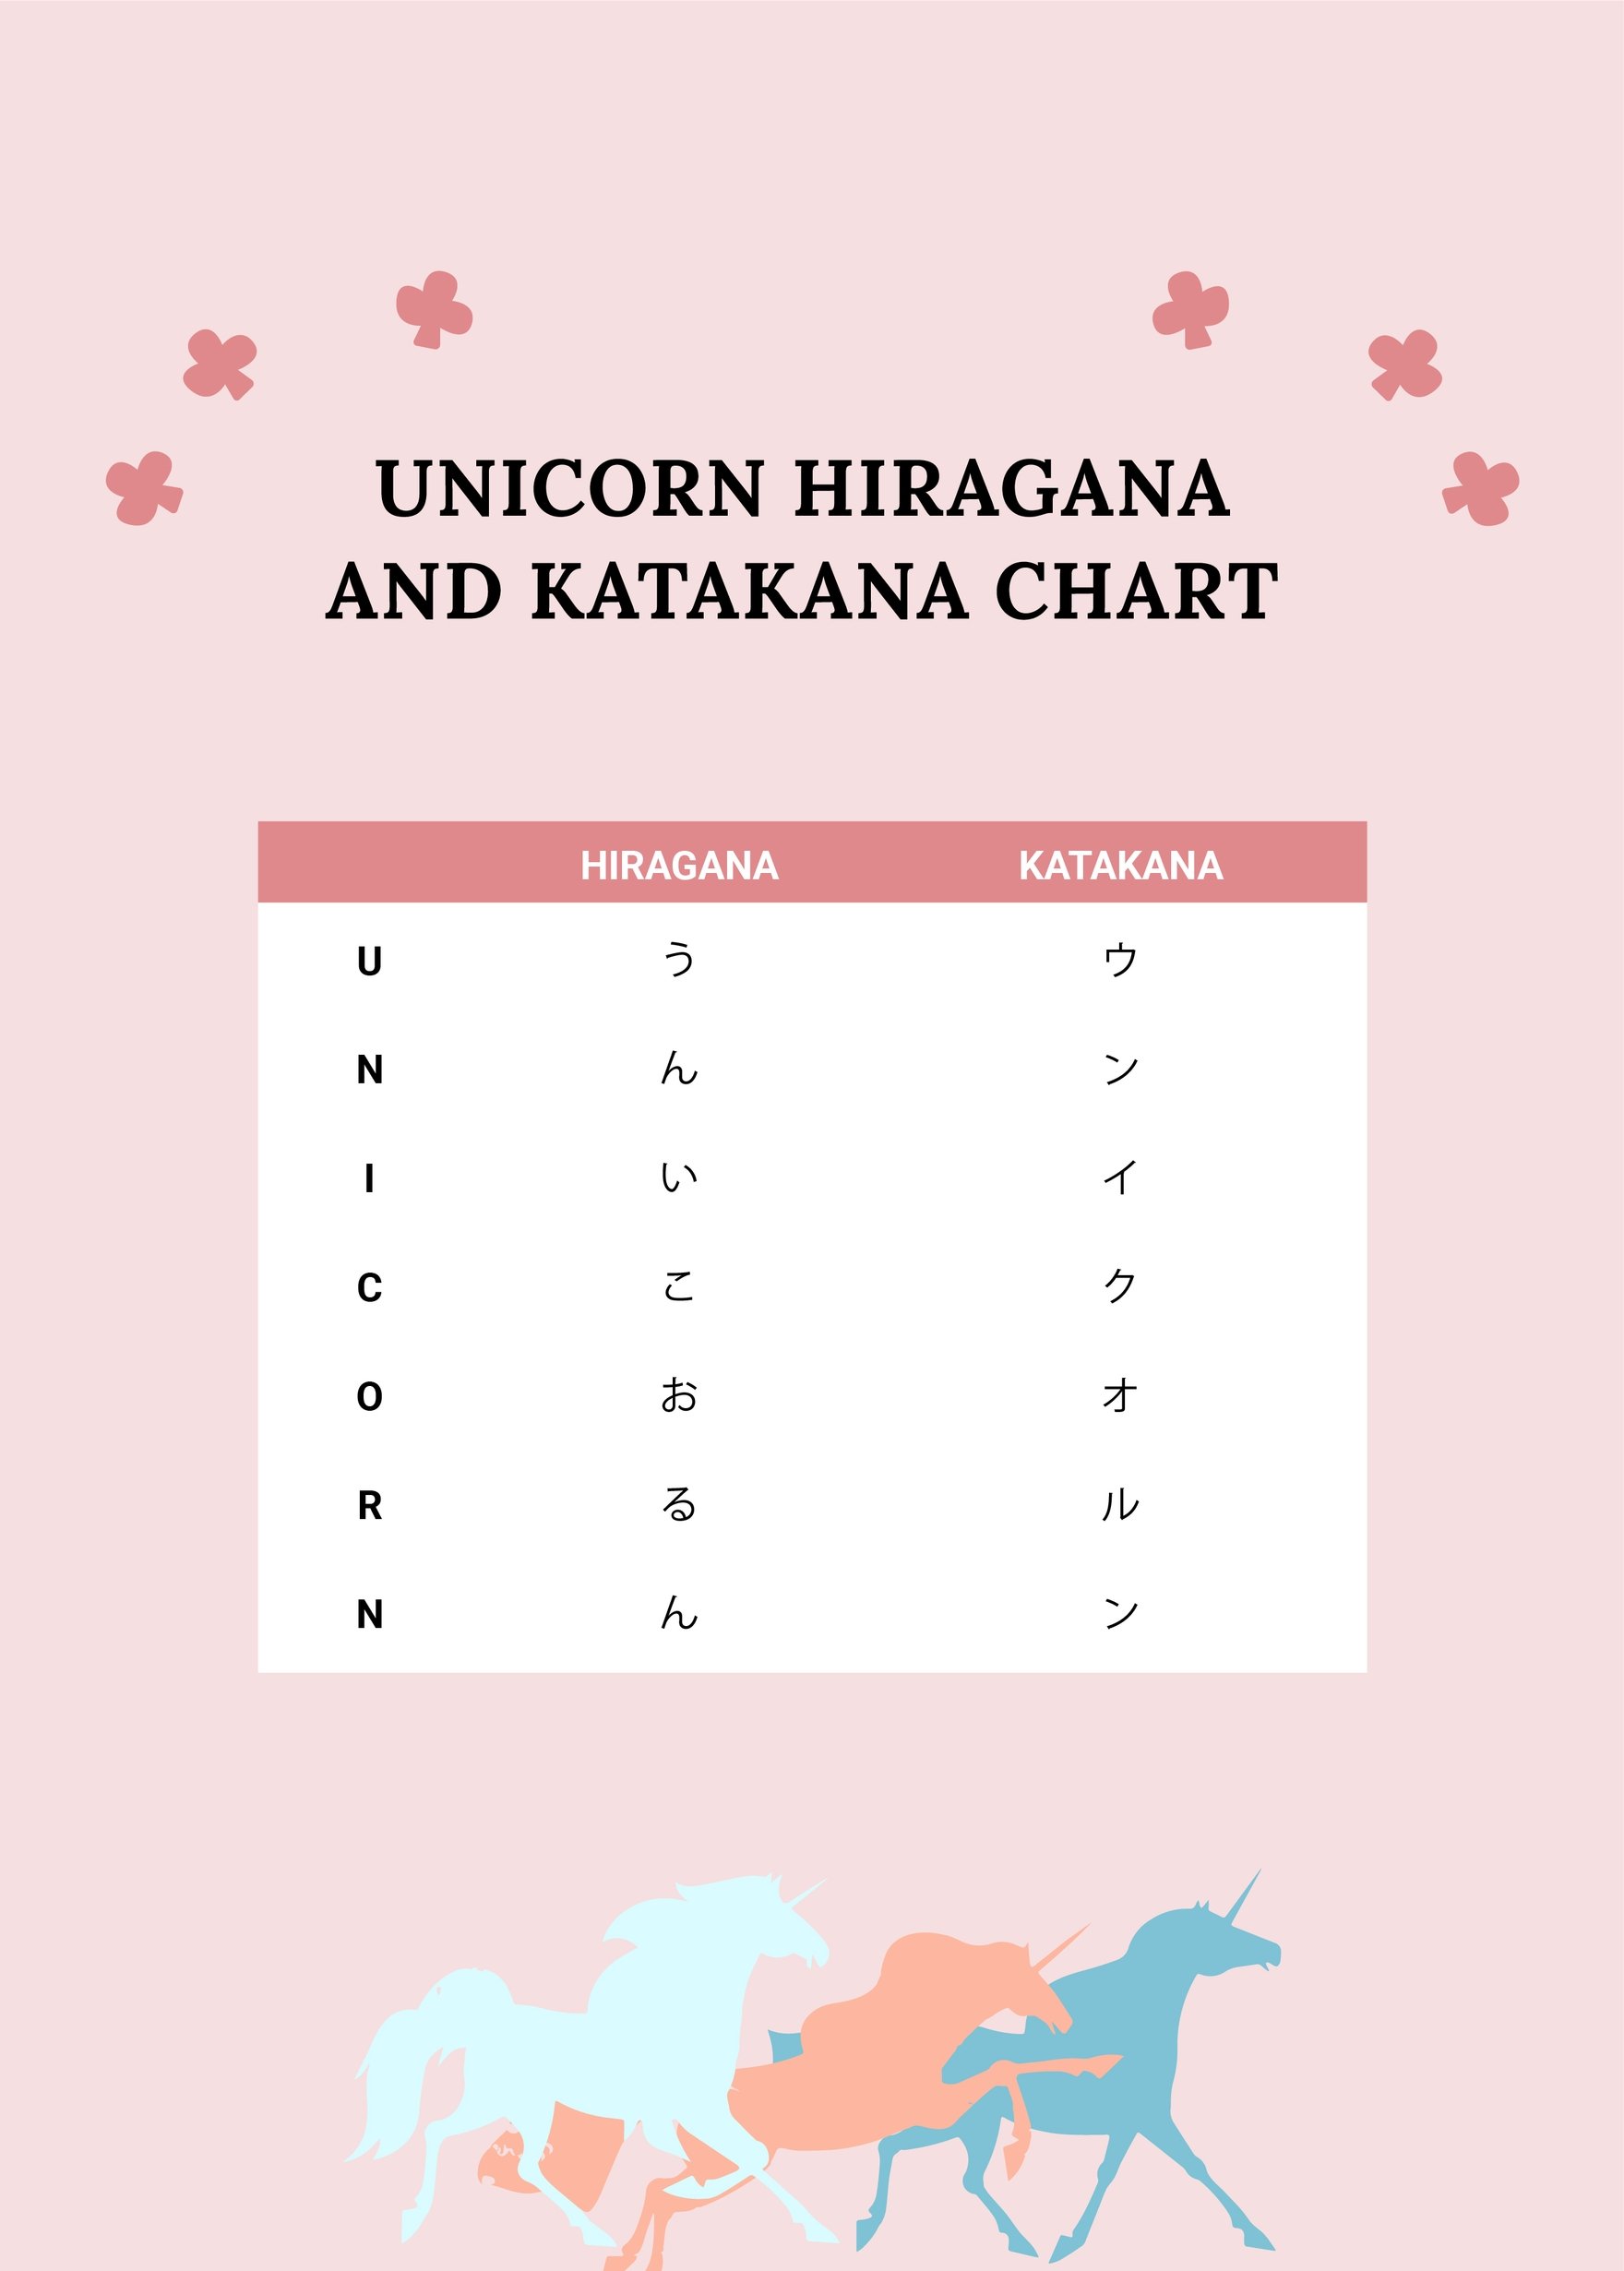 Free Unicorn Hiragana And Katakana Chart in PDF, Illustrator